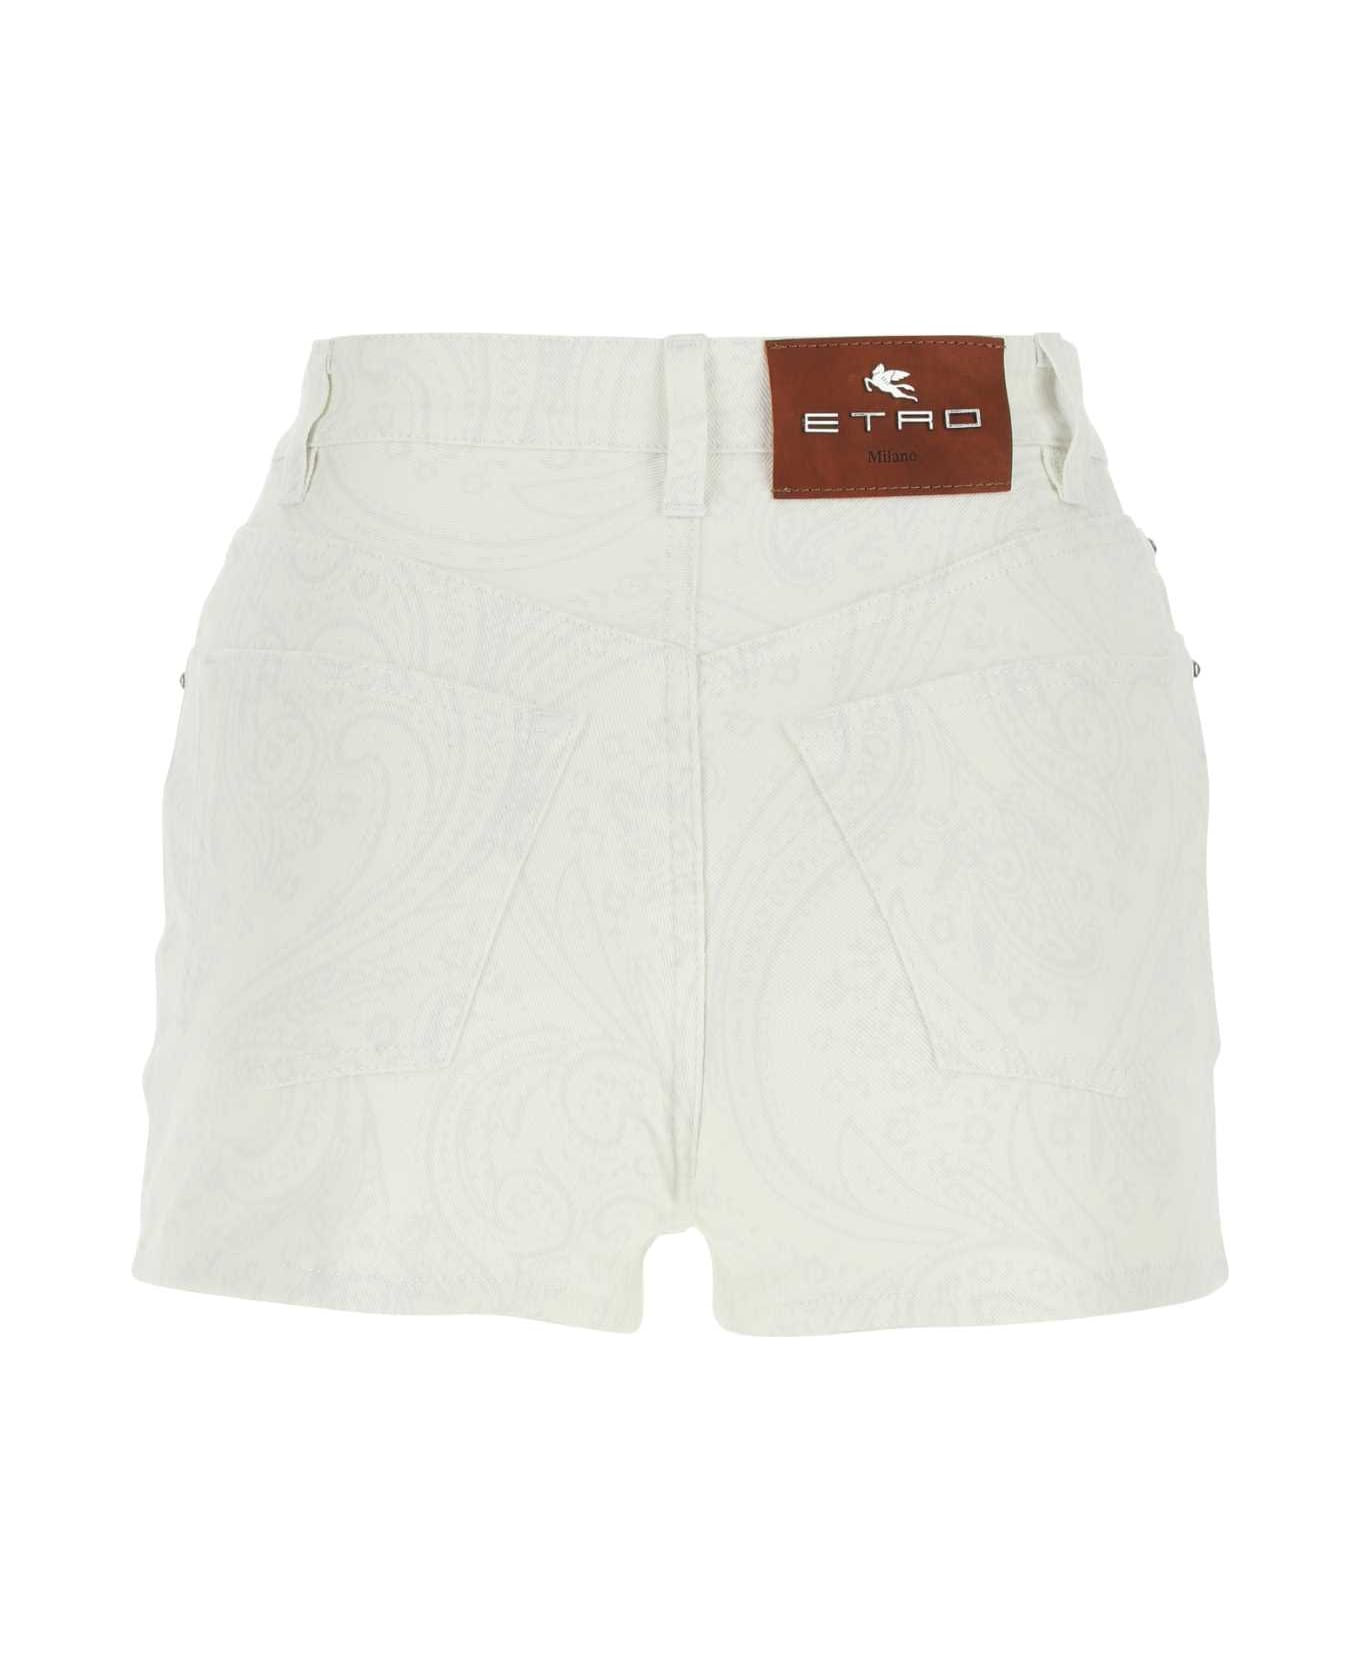 Etro Printed Stretch Denim Shorts - WHITE